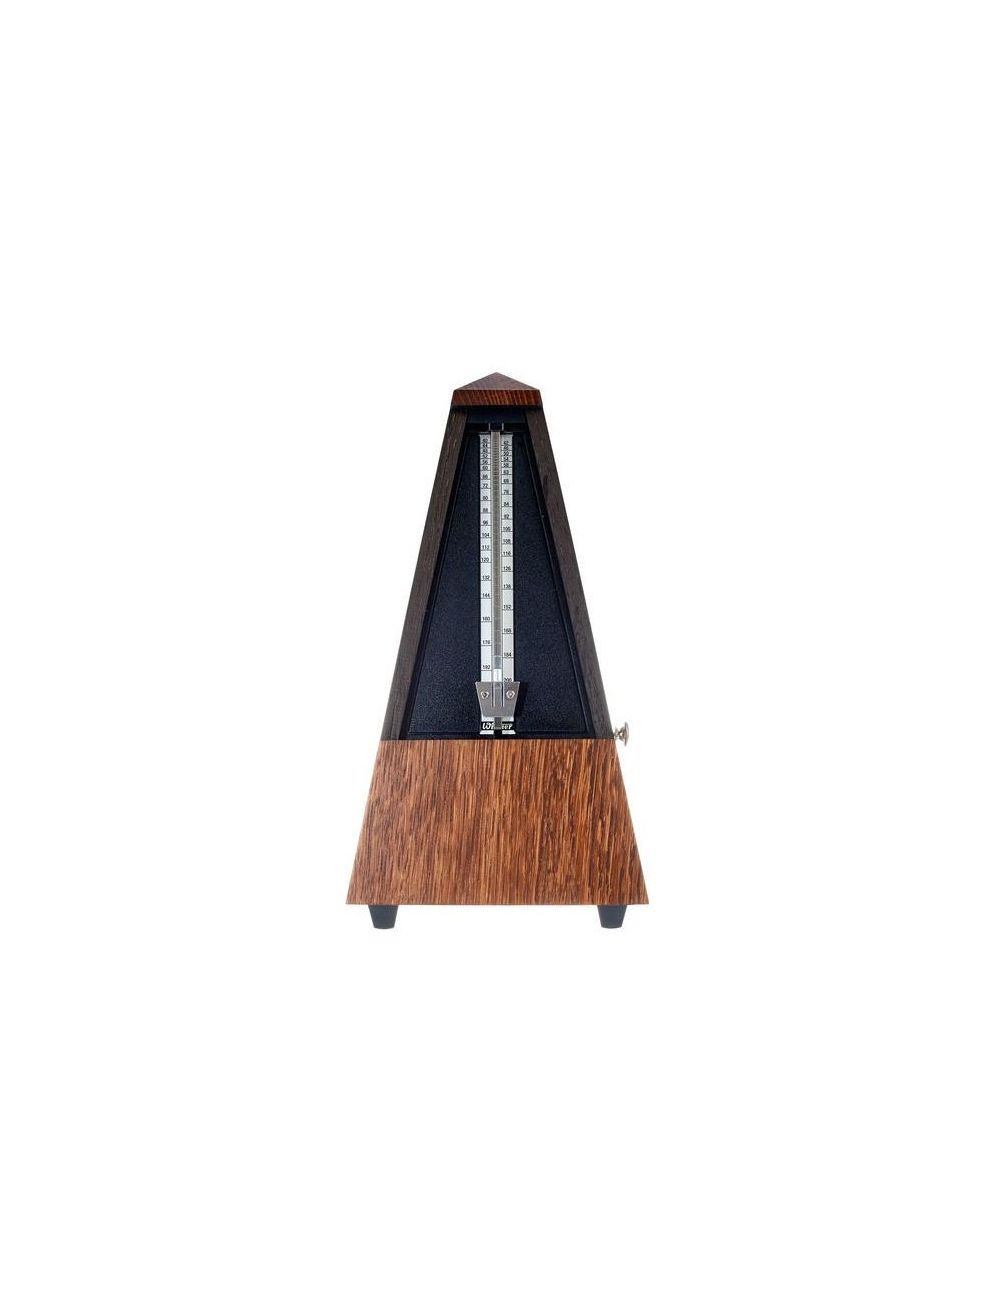 Wittner 818 Métronome avec cloche en bois de chêne